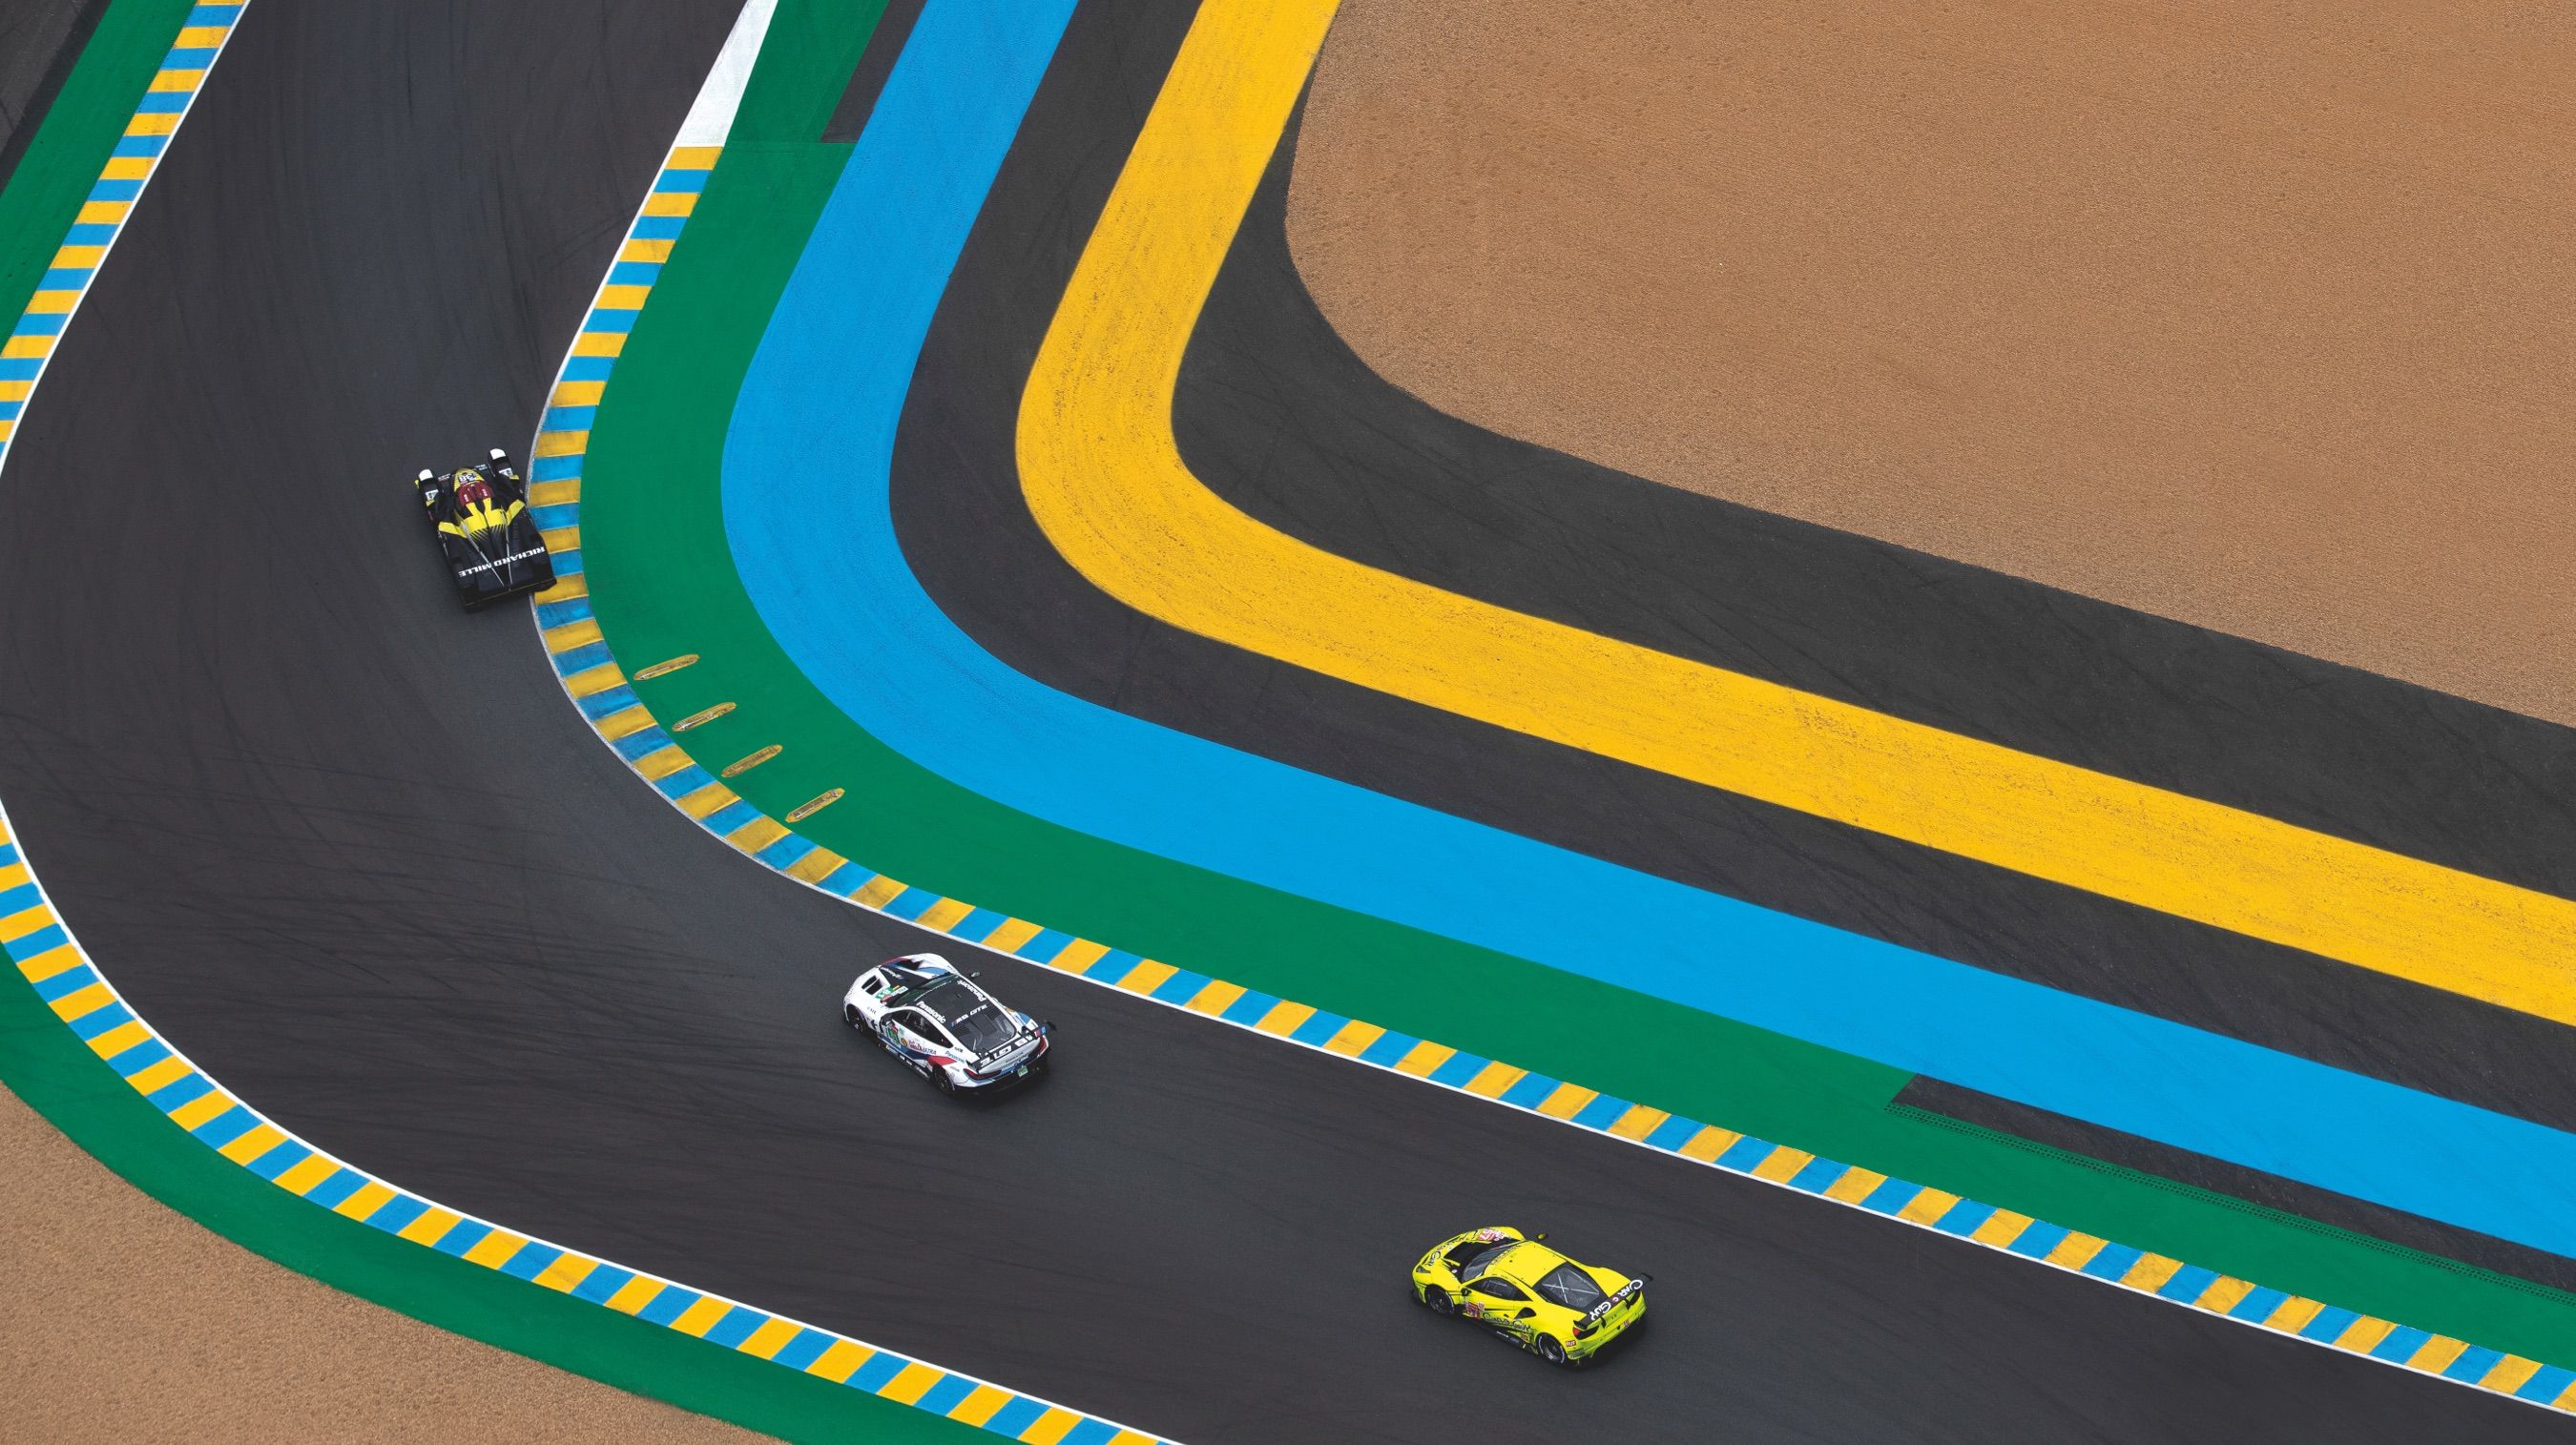 Rolex ist seit 2001 offizieller Zeitgeber der 24 Stunden von Le Mans.